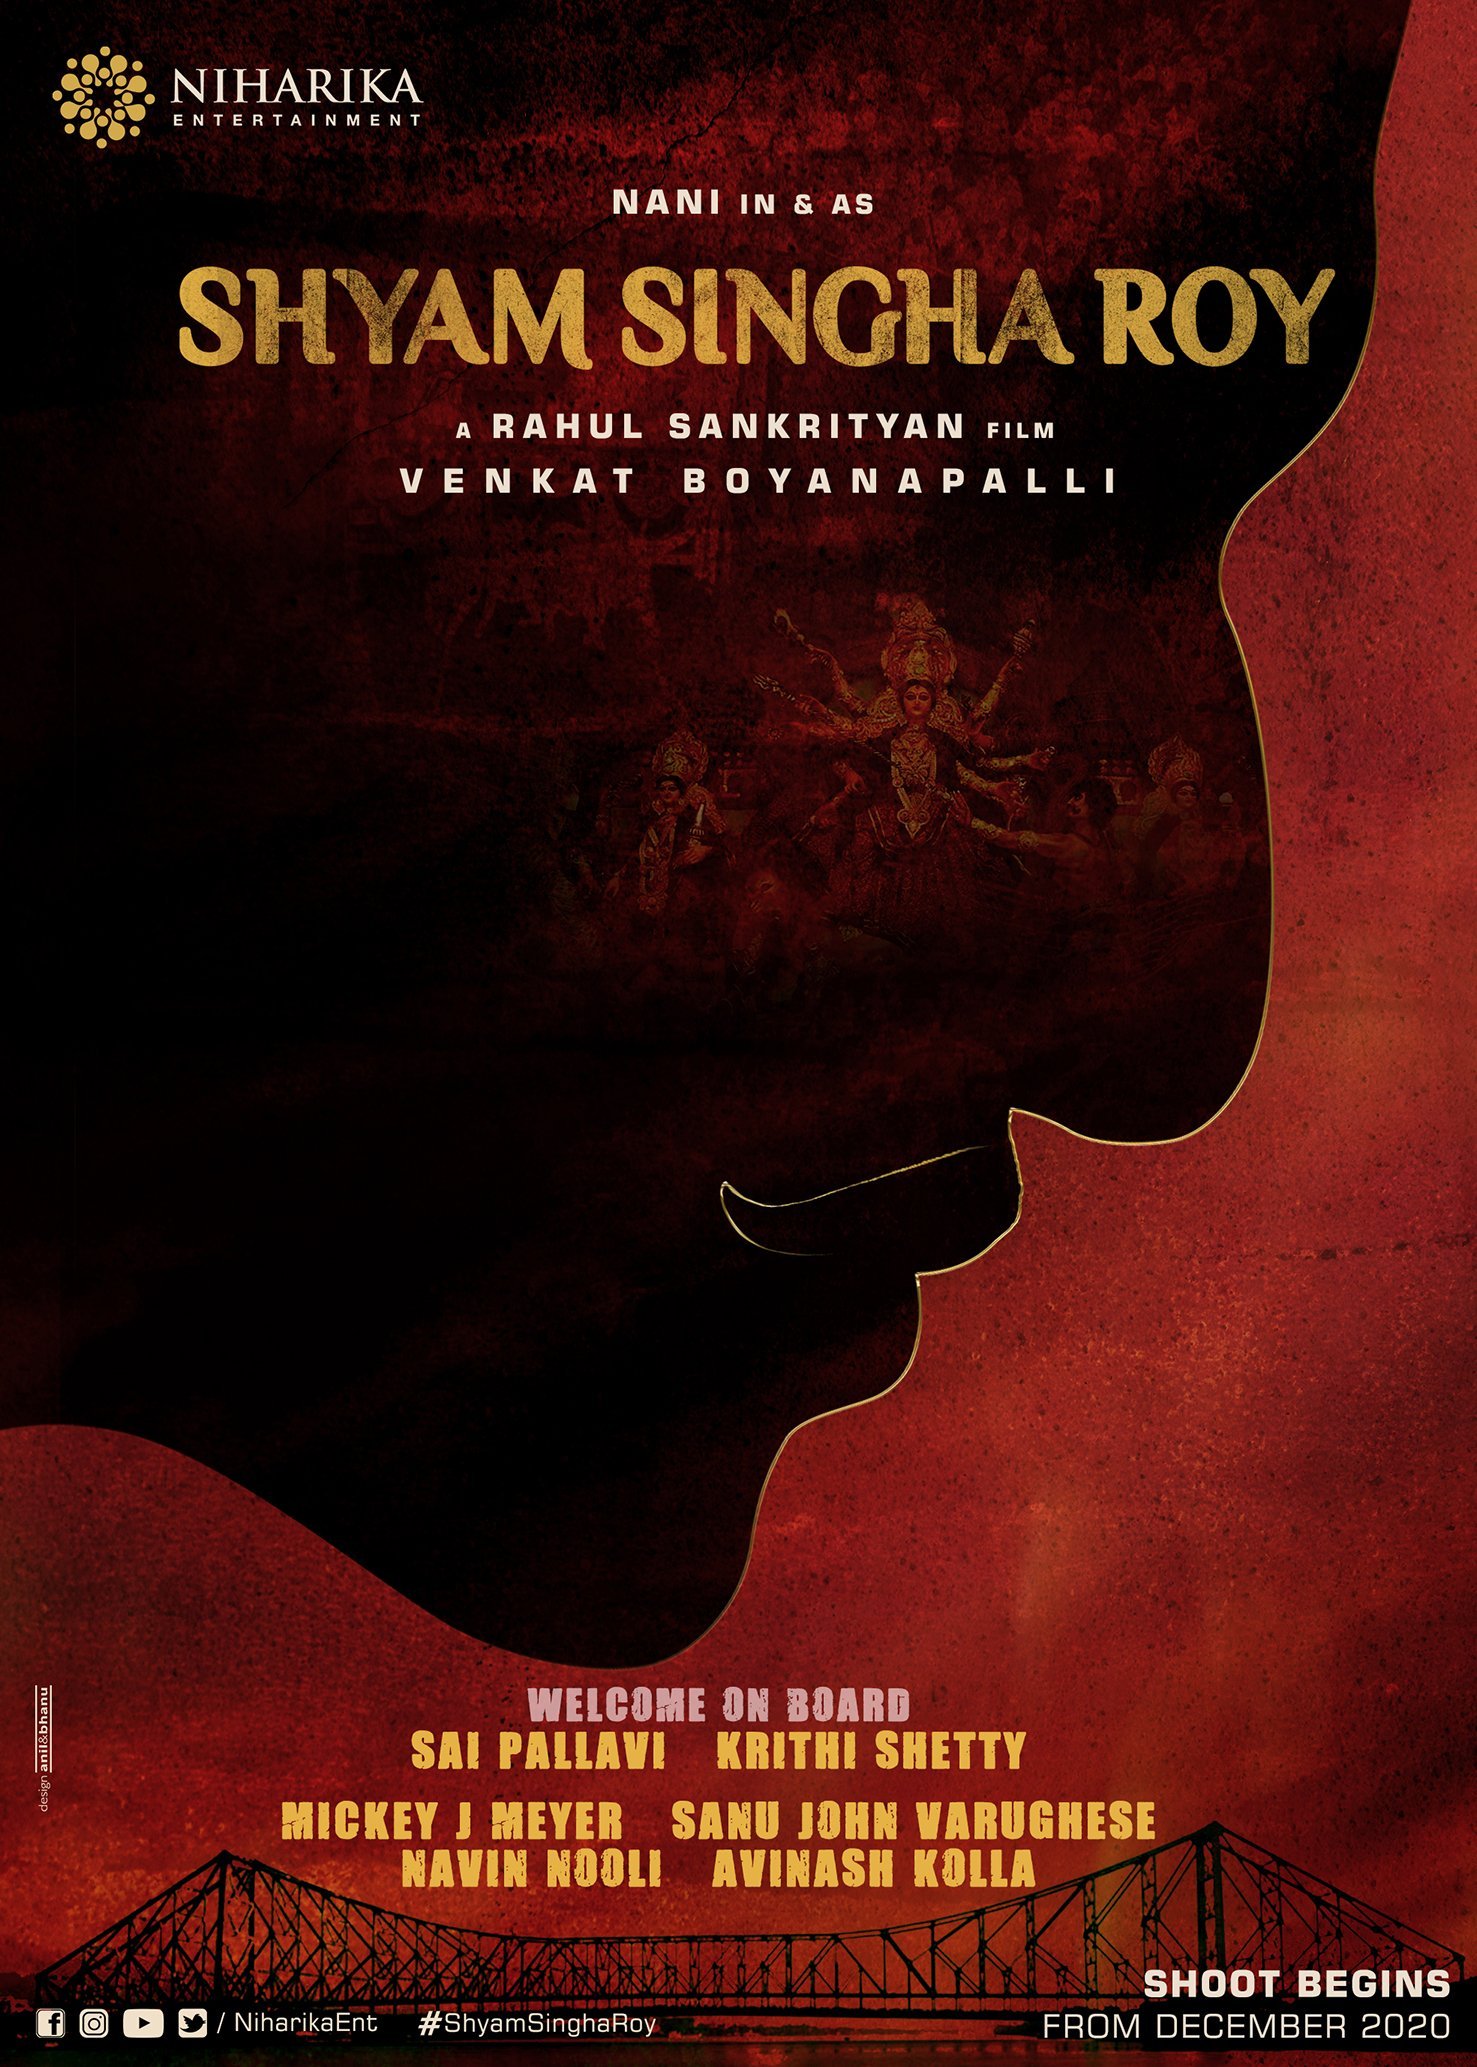 Shyam singha roy cast